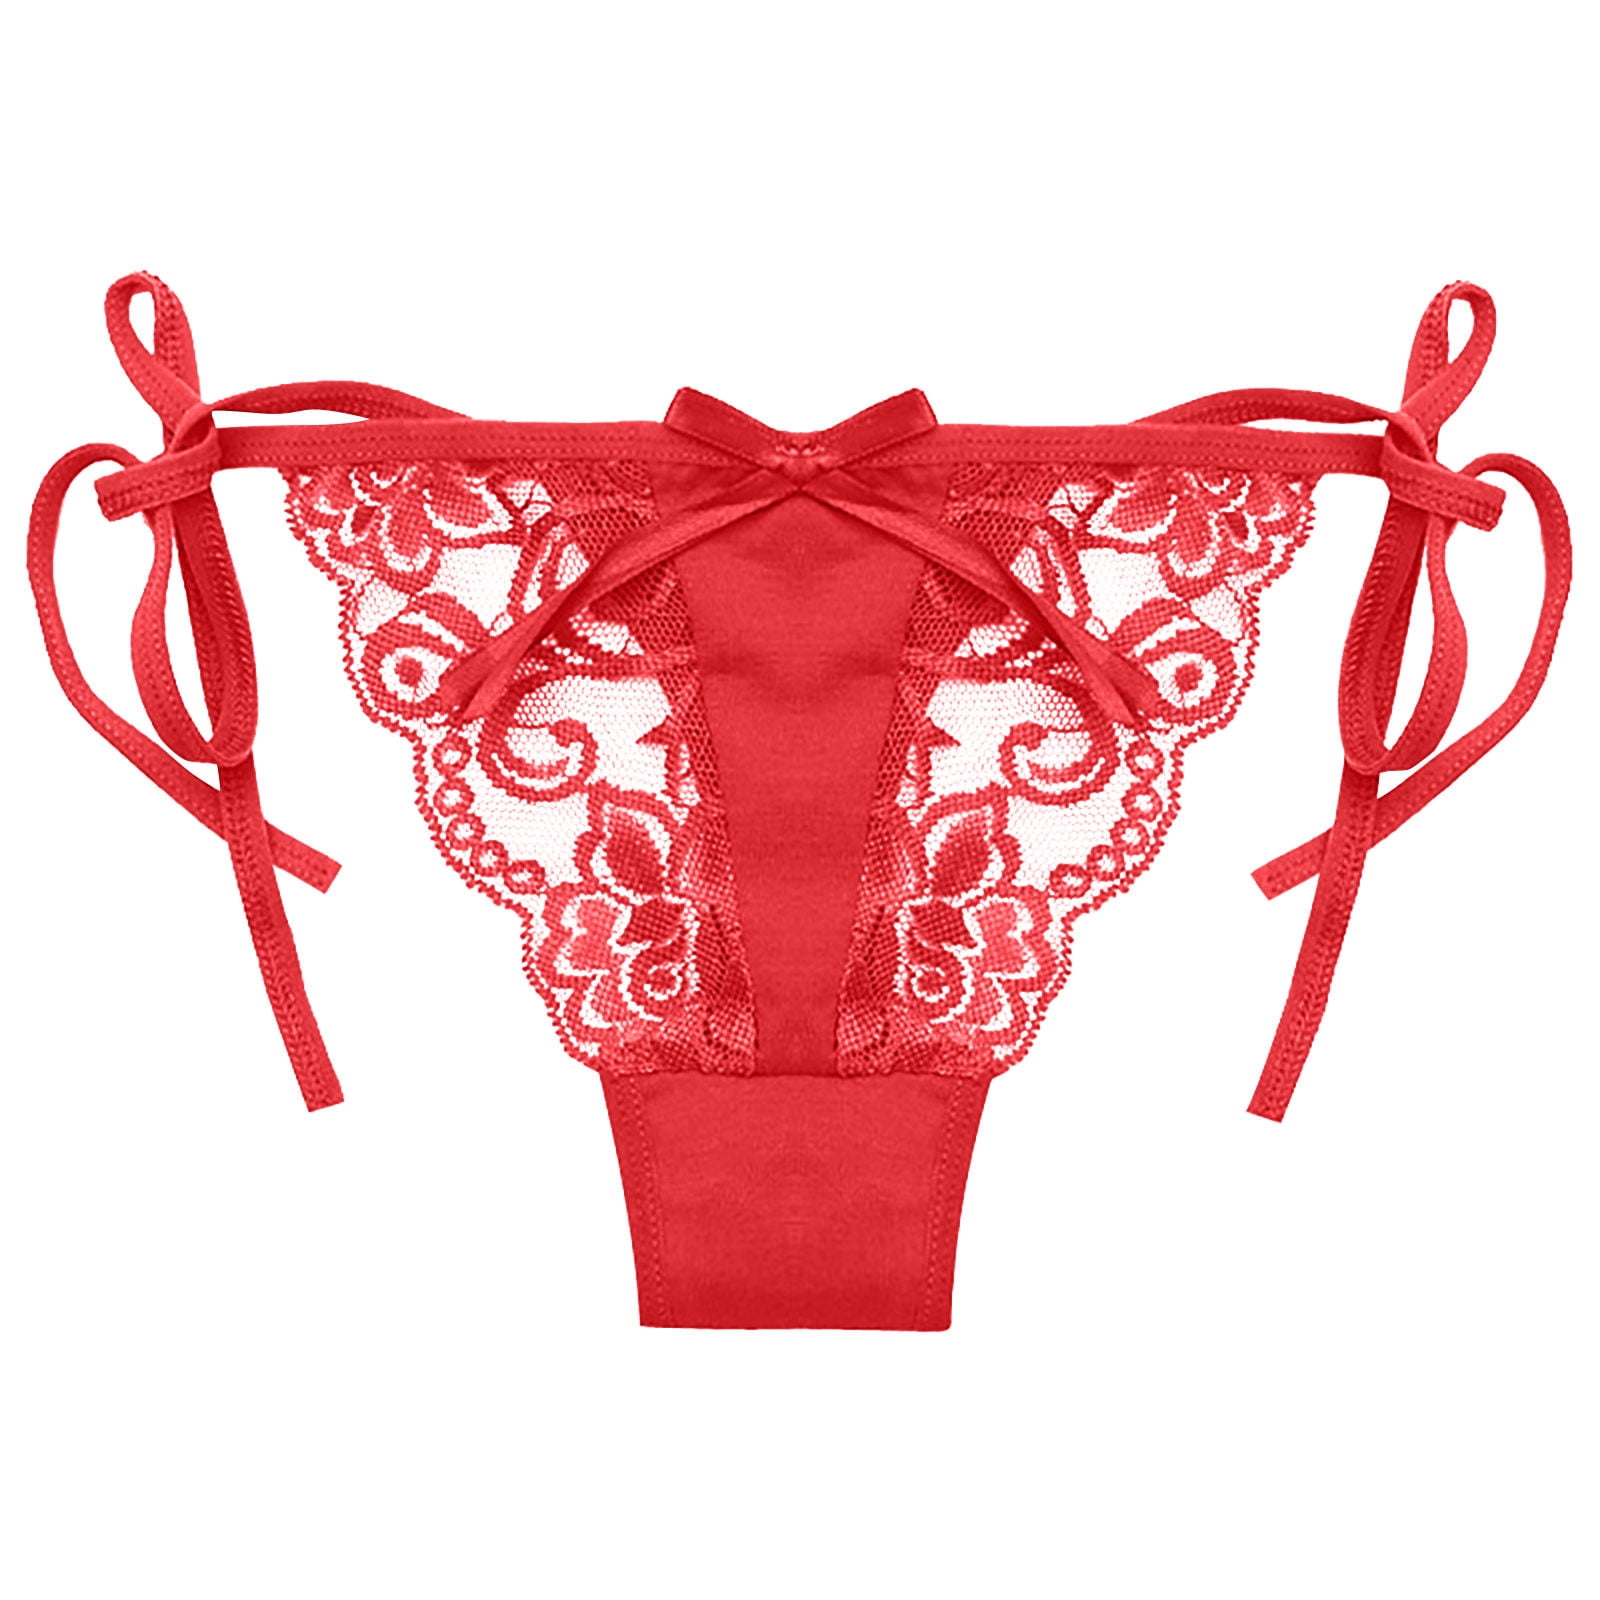 Odeerbi Womens Underwear See Through Thongs Erogenous Lace Lingerie Panties  Underpants Hot Pink 